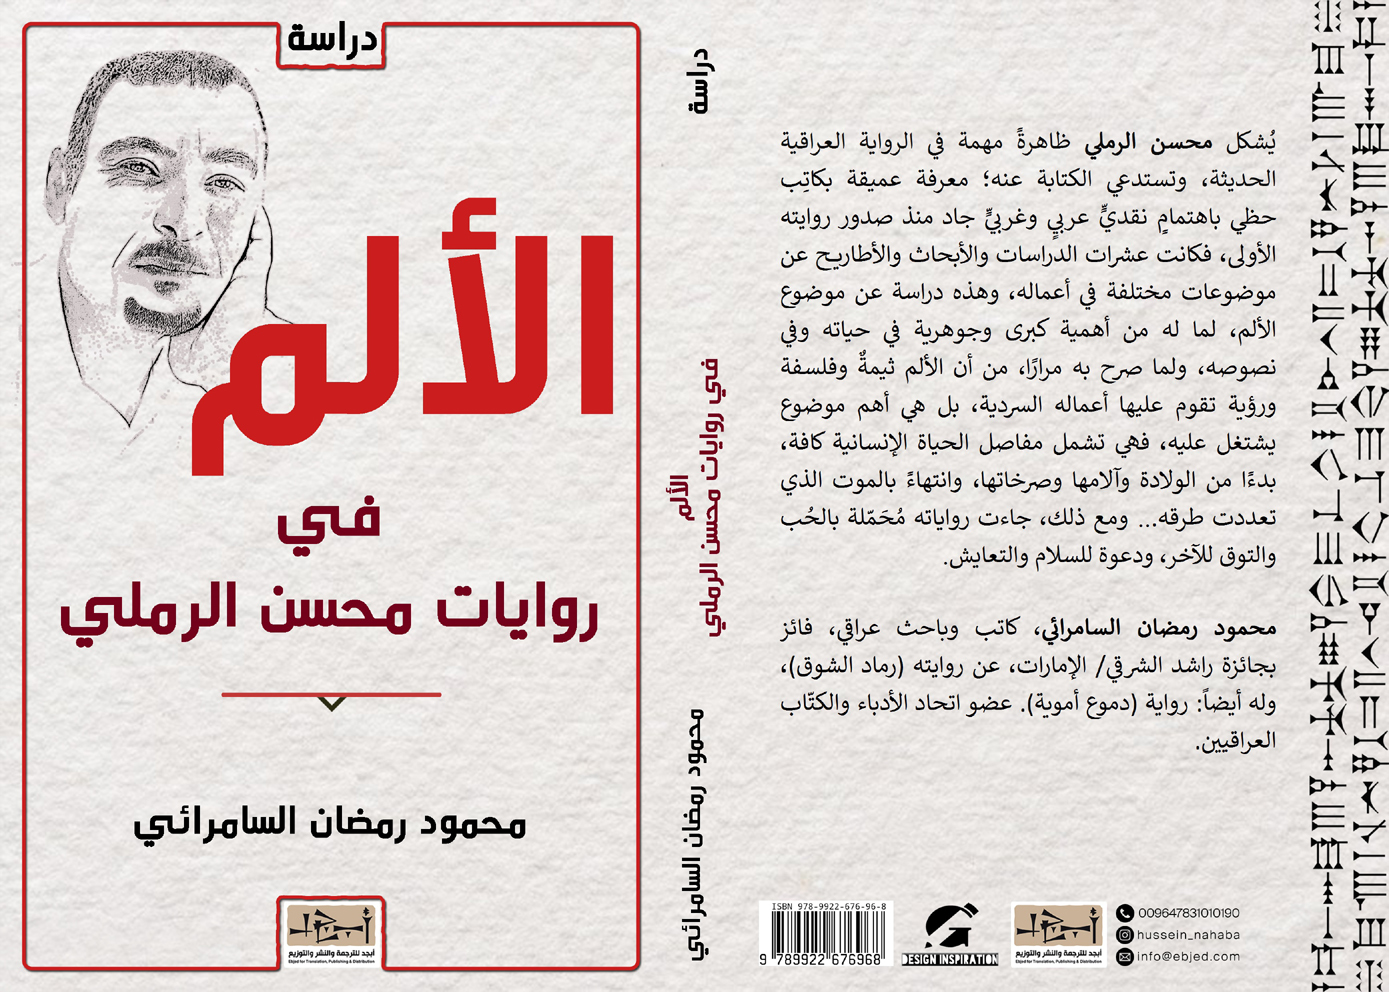 كتاب الألم في روايات محسن الرملي - محمود رمضان السامرائي 